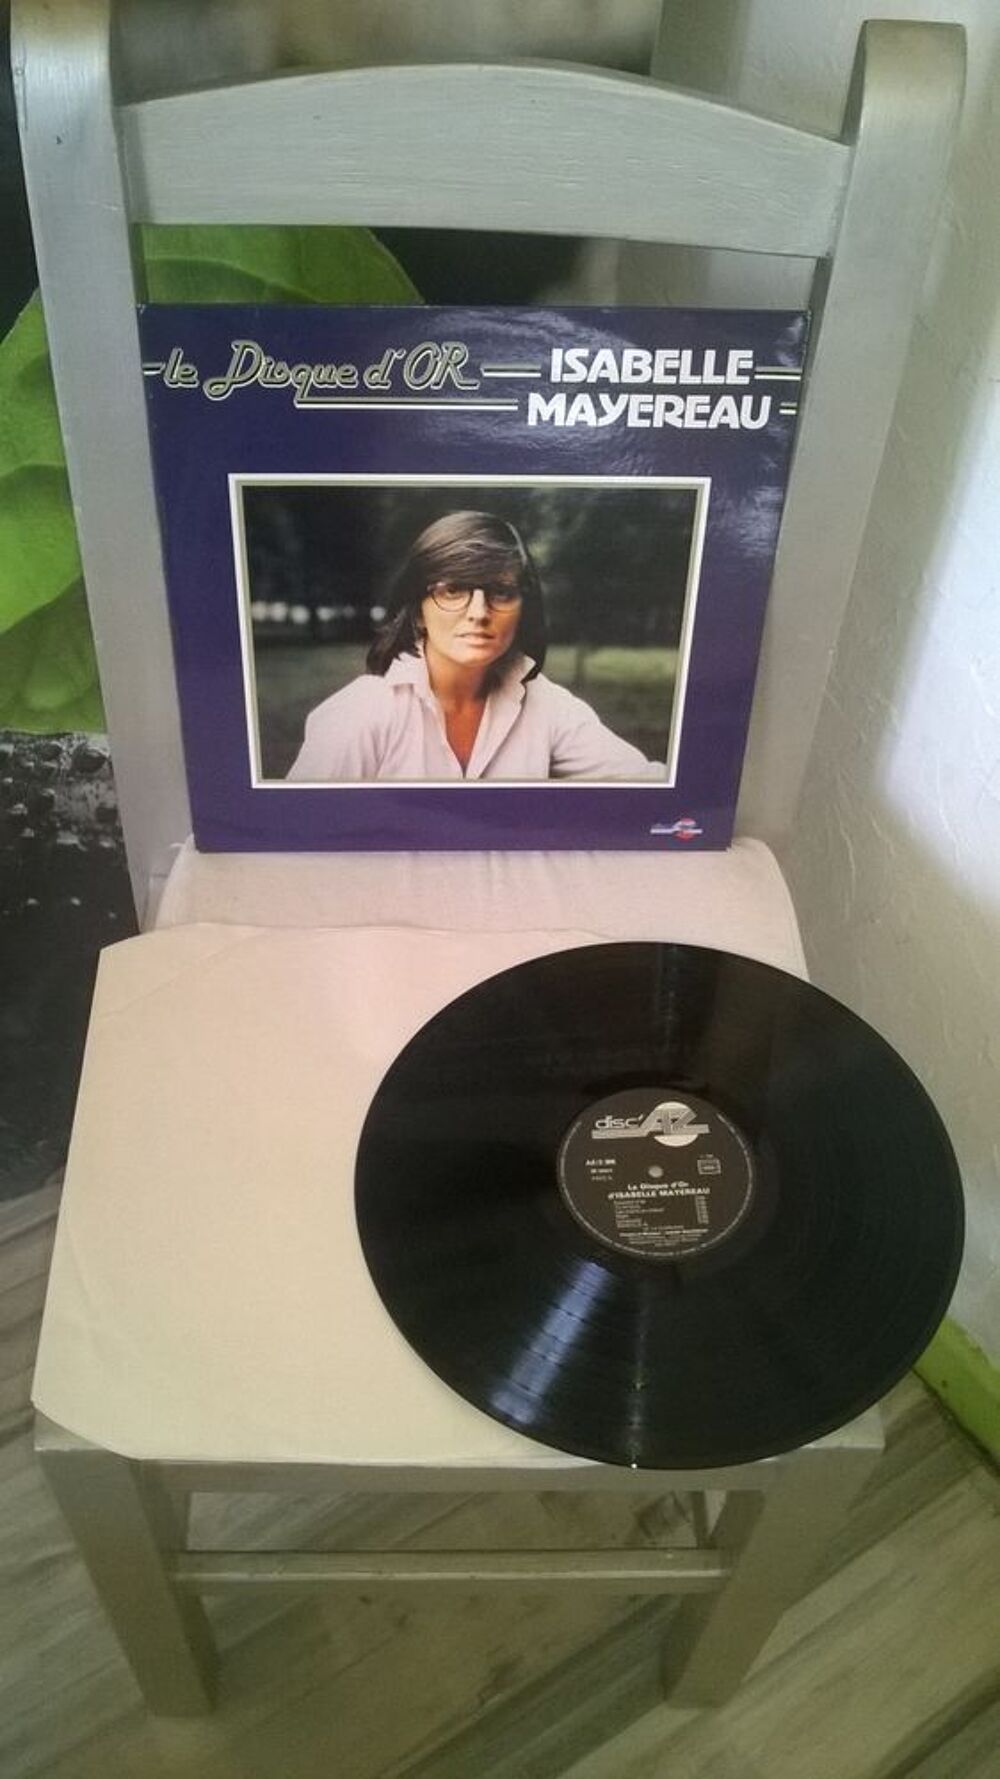 Vinyle Isabelle Mayereau
Le Disque D'Or
1981
Excellent et CD et vinyles